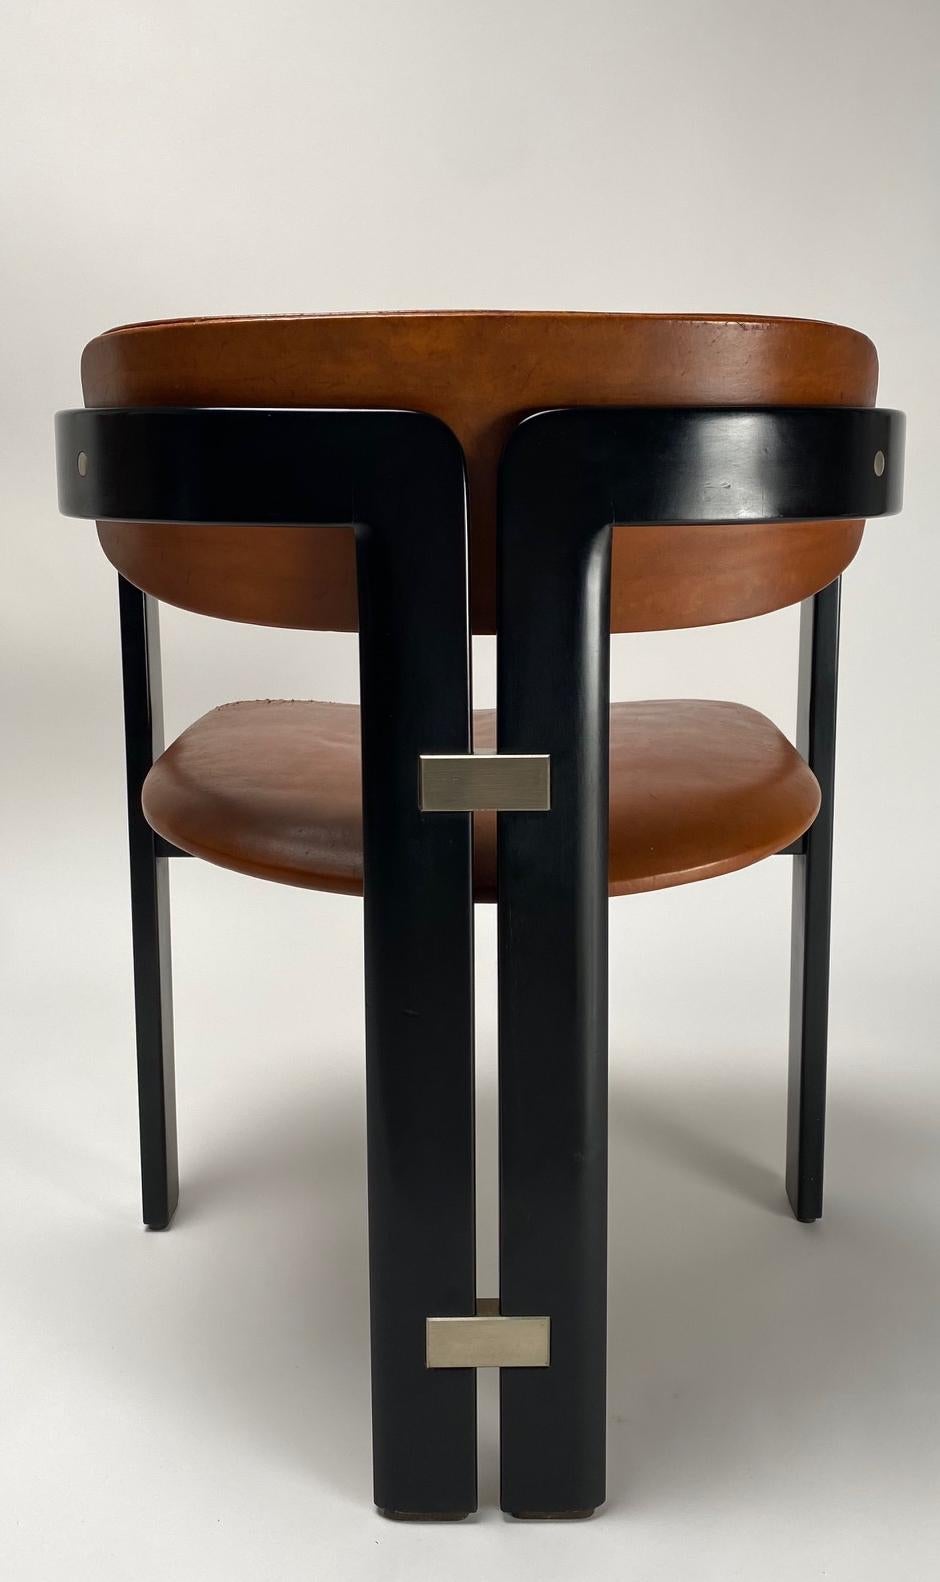 Set aus sechs Massivholzstühlen, entworfen von dem berühmten italienischen Architekten und Designer Augusto Savini. Es handelt sich um ikonische Stühle mit einer architektonischen Struktur, ausgehend von den gebogenen Holzrahmen, die mit schönen